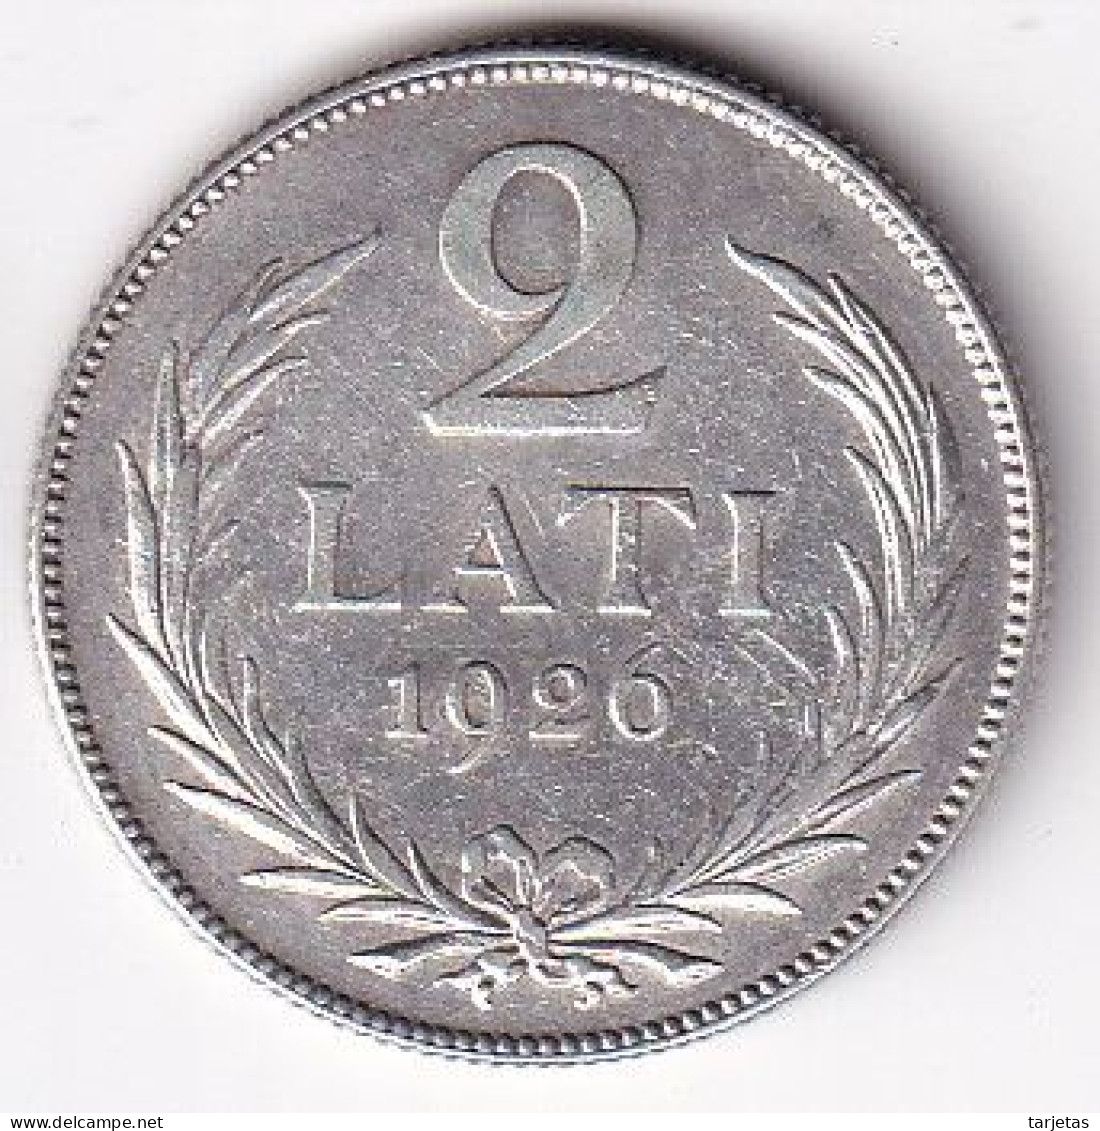 MONEDA DE PLATA DE LETONIA DE 2 LATI DEL AÑO 1926  (COIN) SILVER-ARGENT - Letland